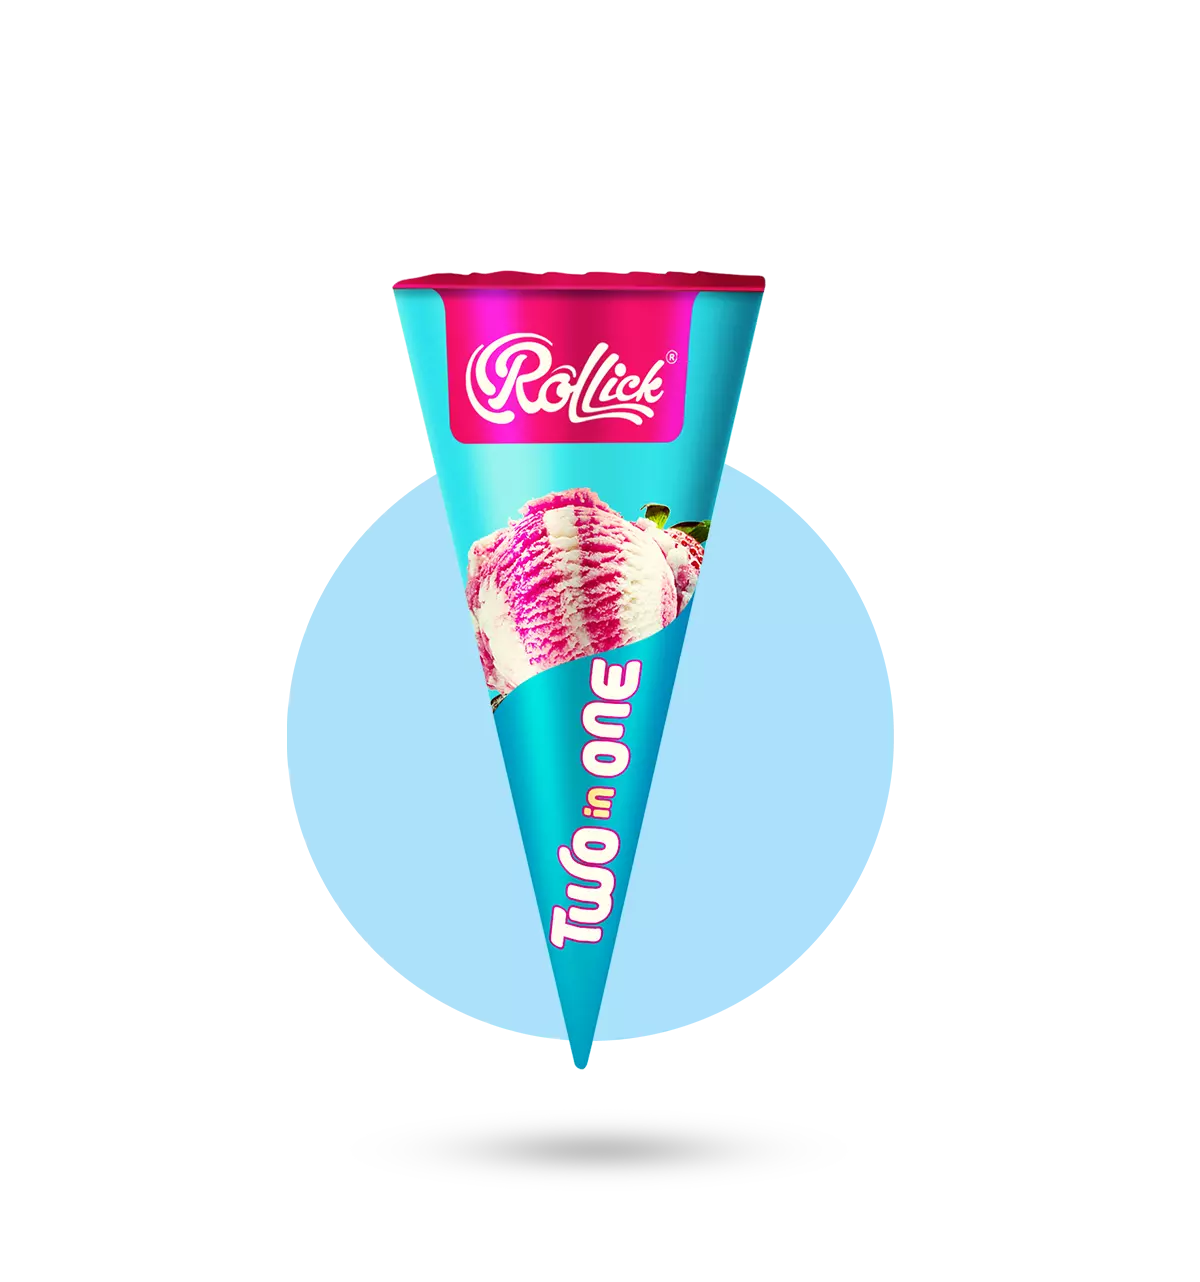 Crunchy Cones – Rollick Ice Cream Cones